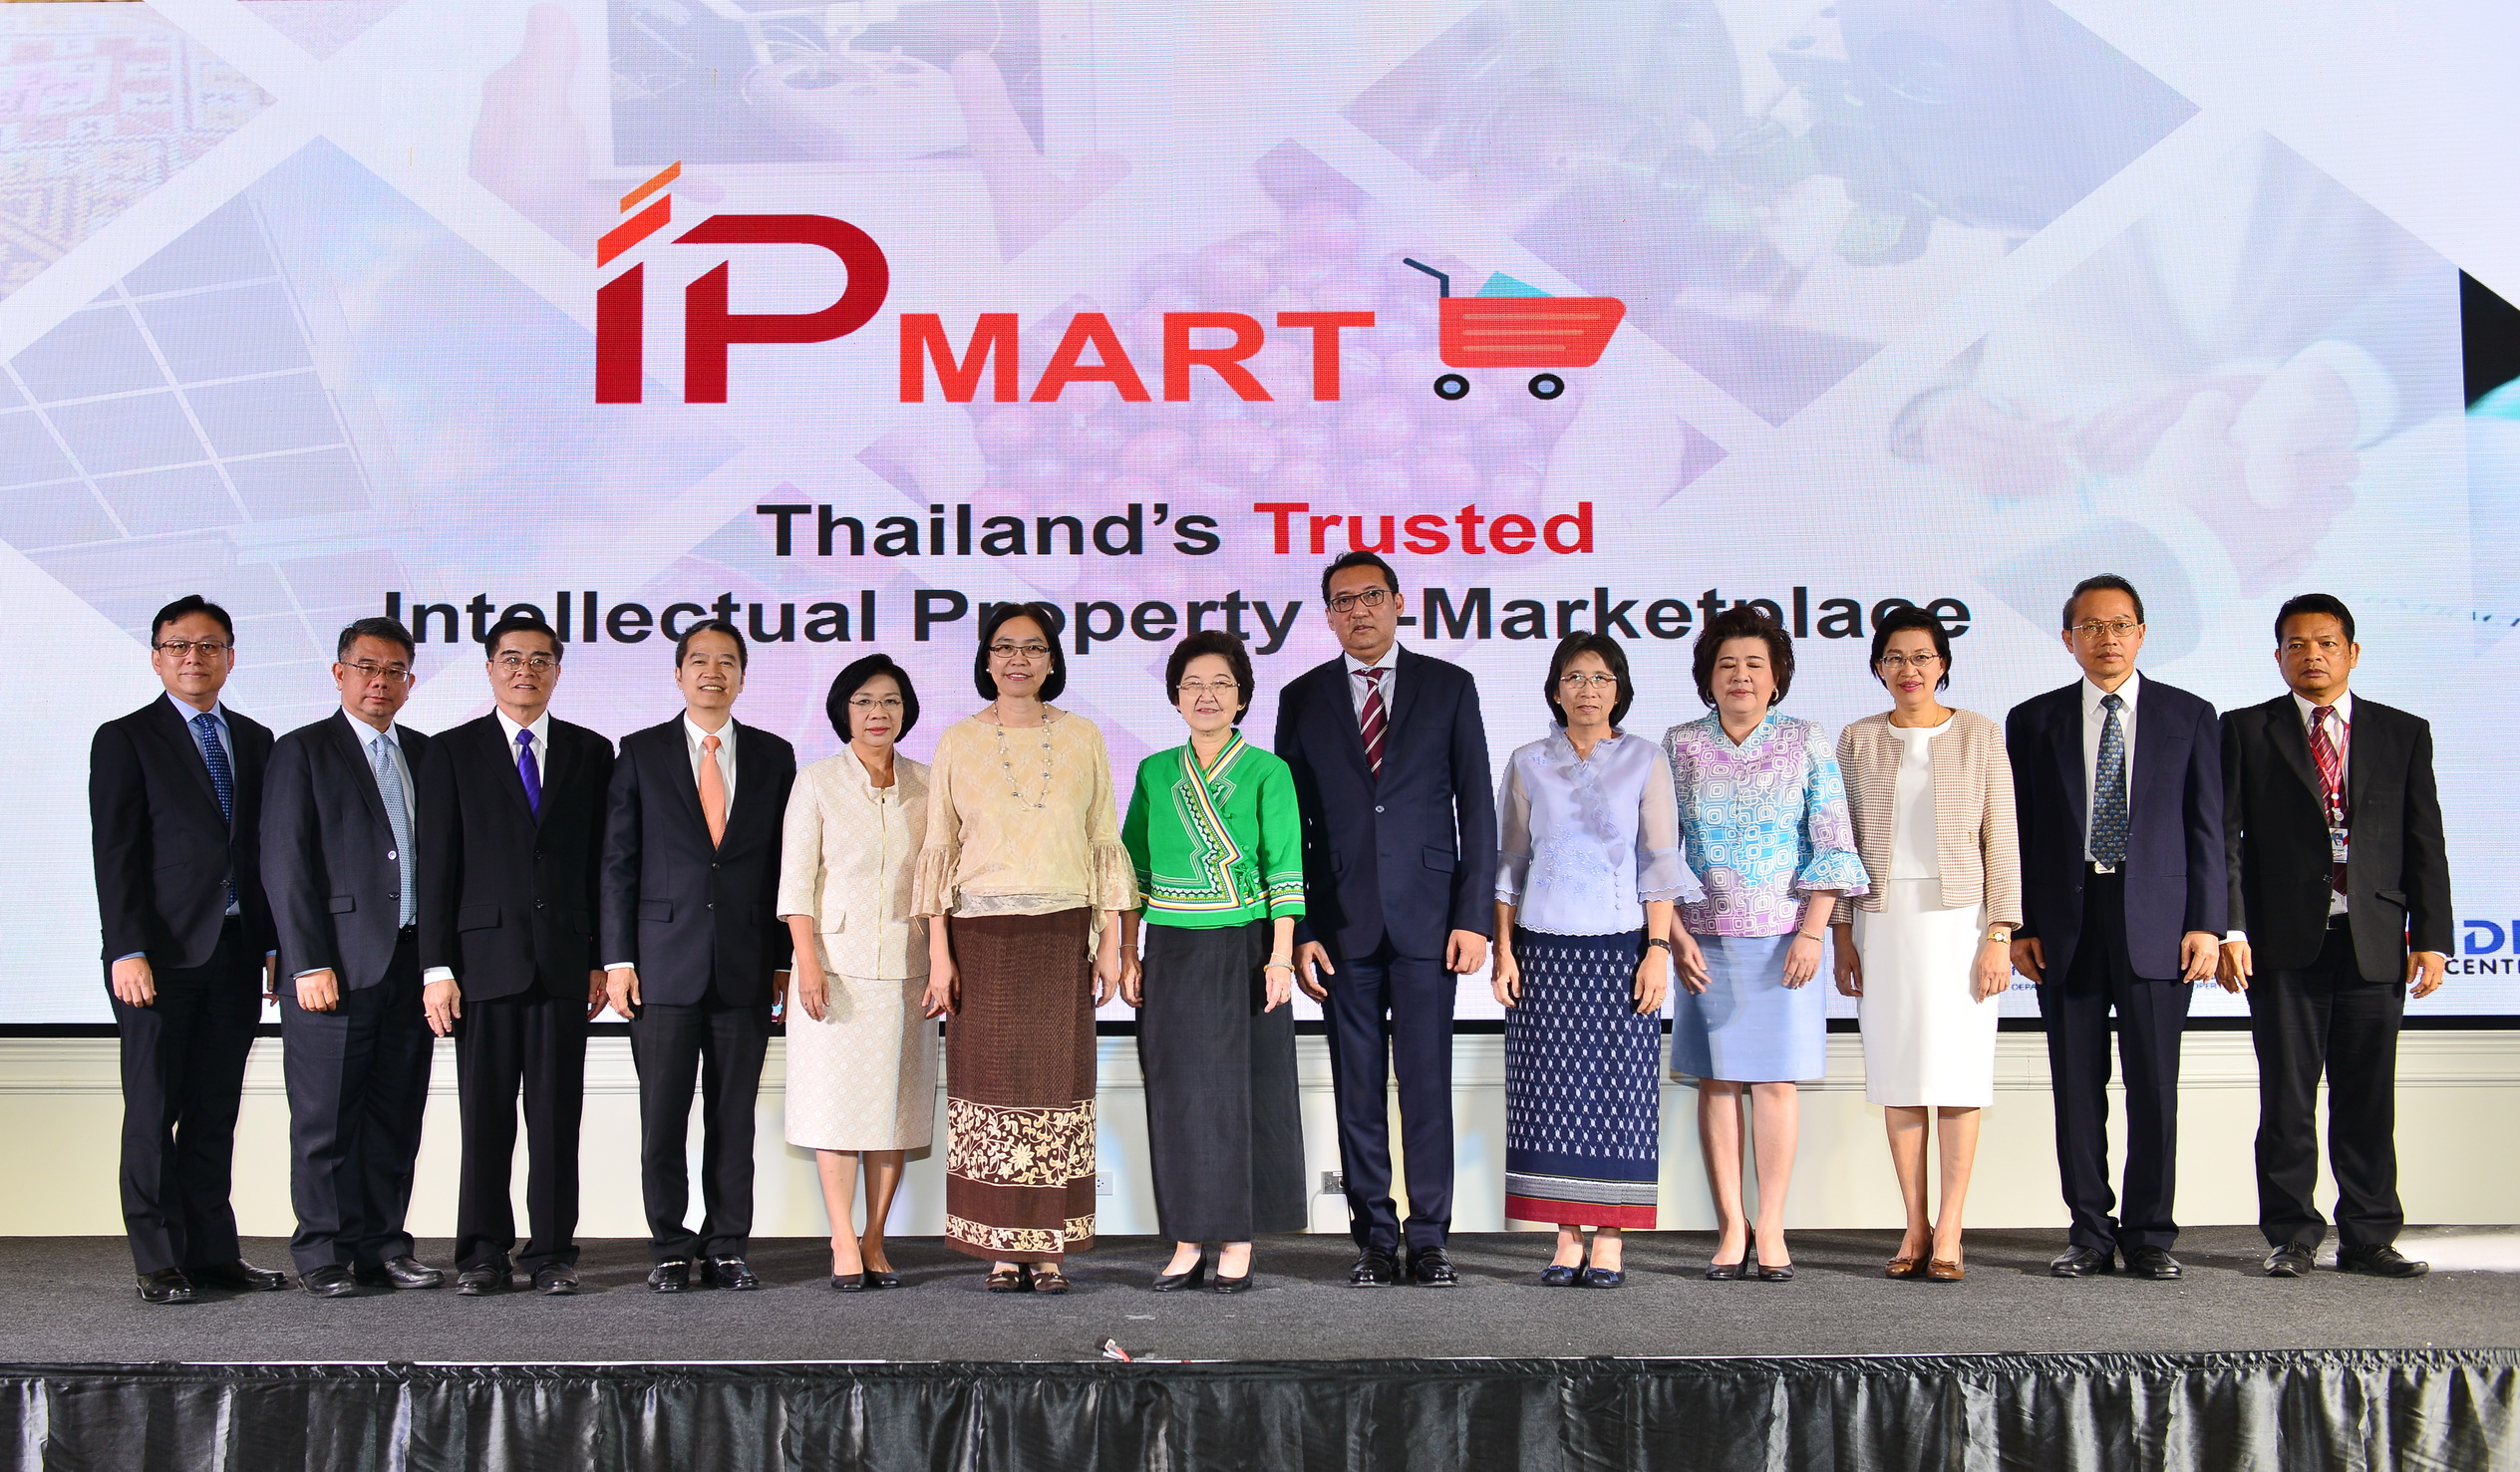 พิธีเปิดตลาดกลางทรัพย์สินทางปัญญา (IP Mart)  และพิธีลงนามบันทึกข้อตกลงว่าด้วยความร่วมมือในการพัฒนางานด้านทรัพย์สินทางปัญญาระหว่างกรมทรัพย์สินทางปัญญา สถาบันวิจัยวิทยาศาสตร์และเทคโนโลยีแห่งประเทศไทย  และสำนักงานพัฒนาวิทยาศาสตร์และเทคโนโลยีแห่งชาติ